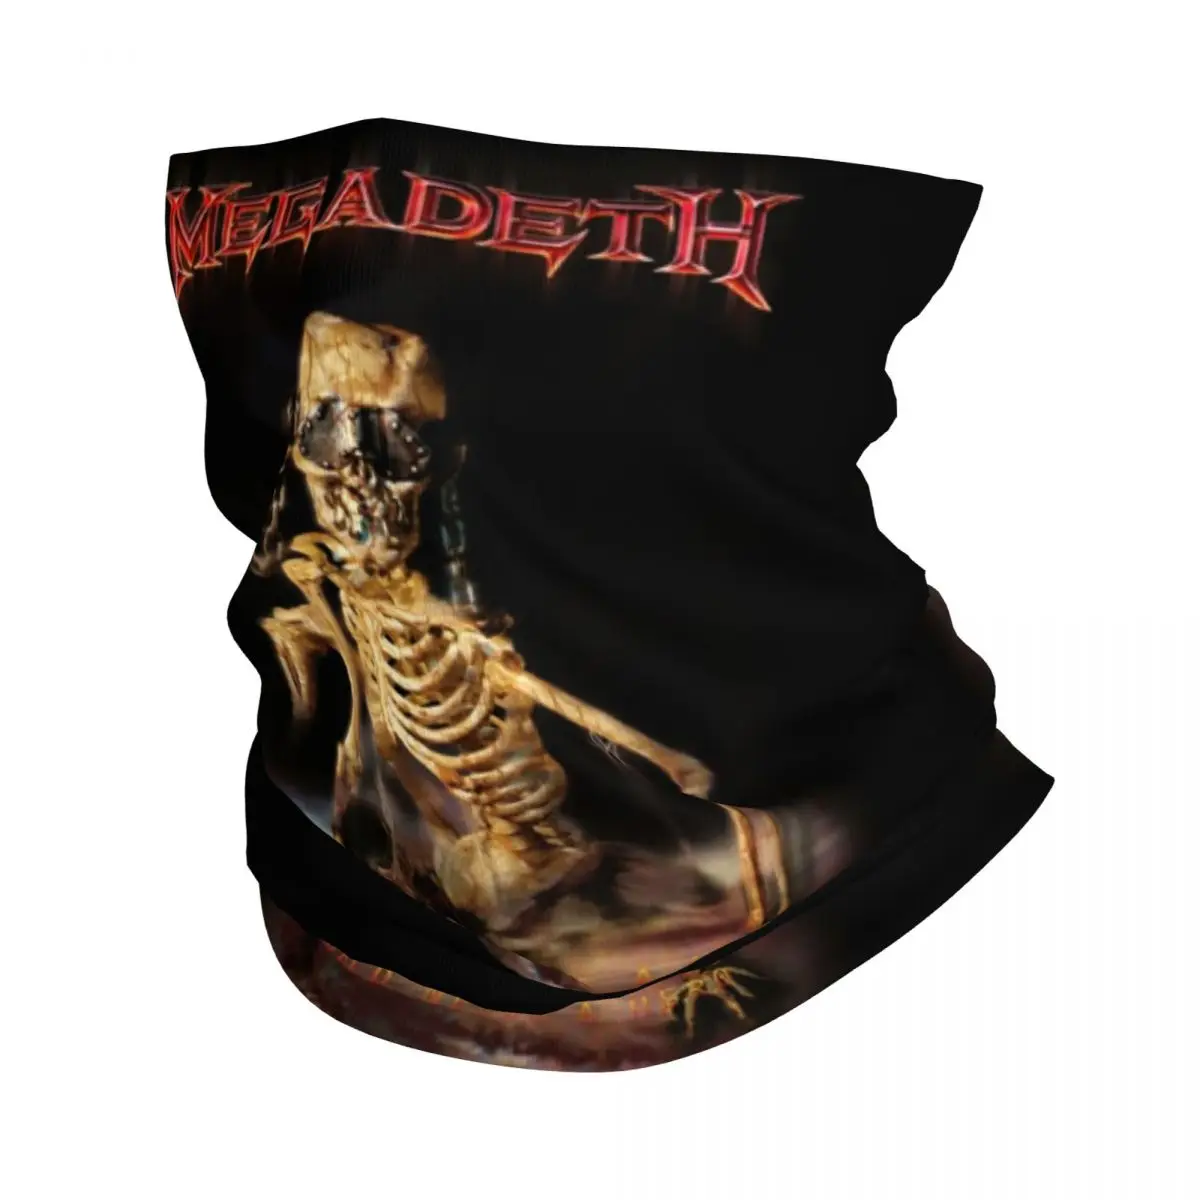 

Megadeths бандана рок-группы зимняя Шейная теплая Женская ветрозащитная повязка на лицо шарф для походов Tengkorak nyоборенкс повязка на голову